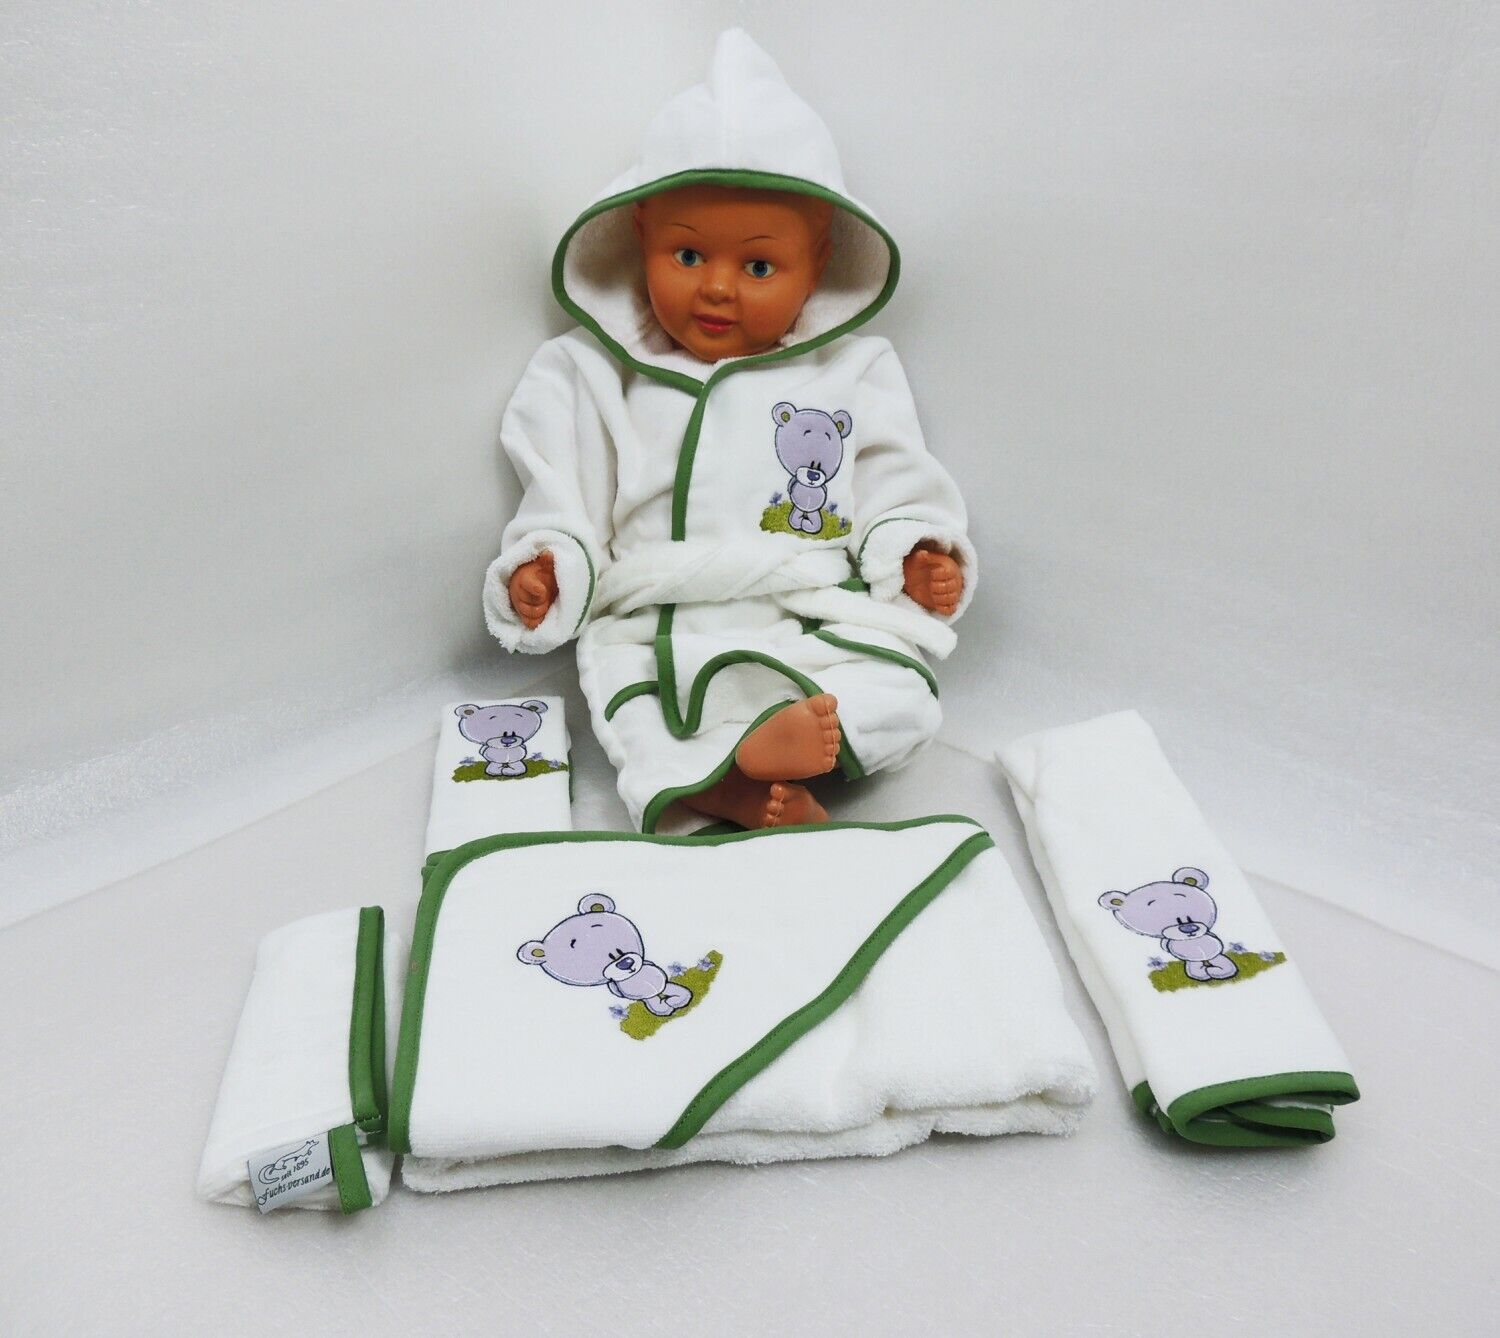 Baby Handtuch Set mit Bademantel Bär-Motiv weiß - grün 5-teilig 100% Baumwolle 